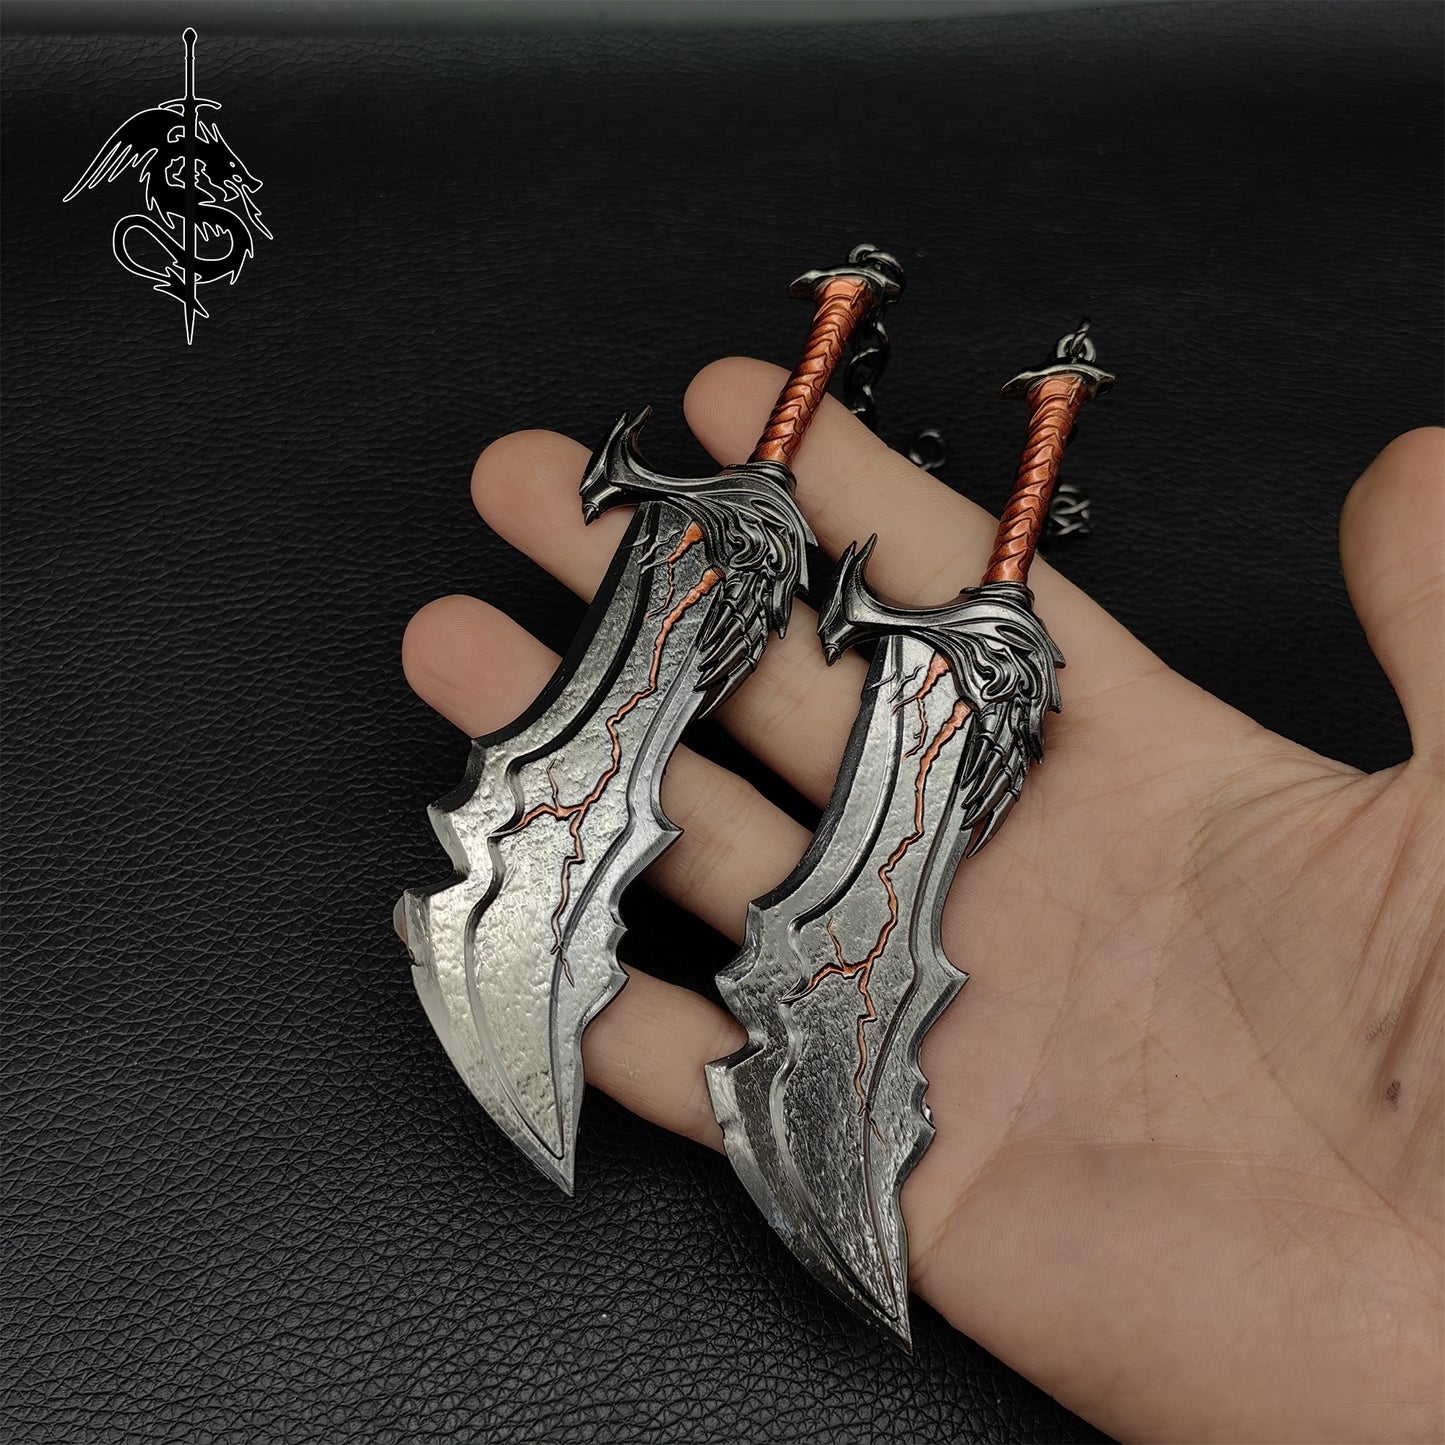 Kratos Leviathan Axe Blade Of Chaos Miniature